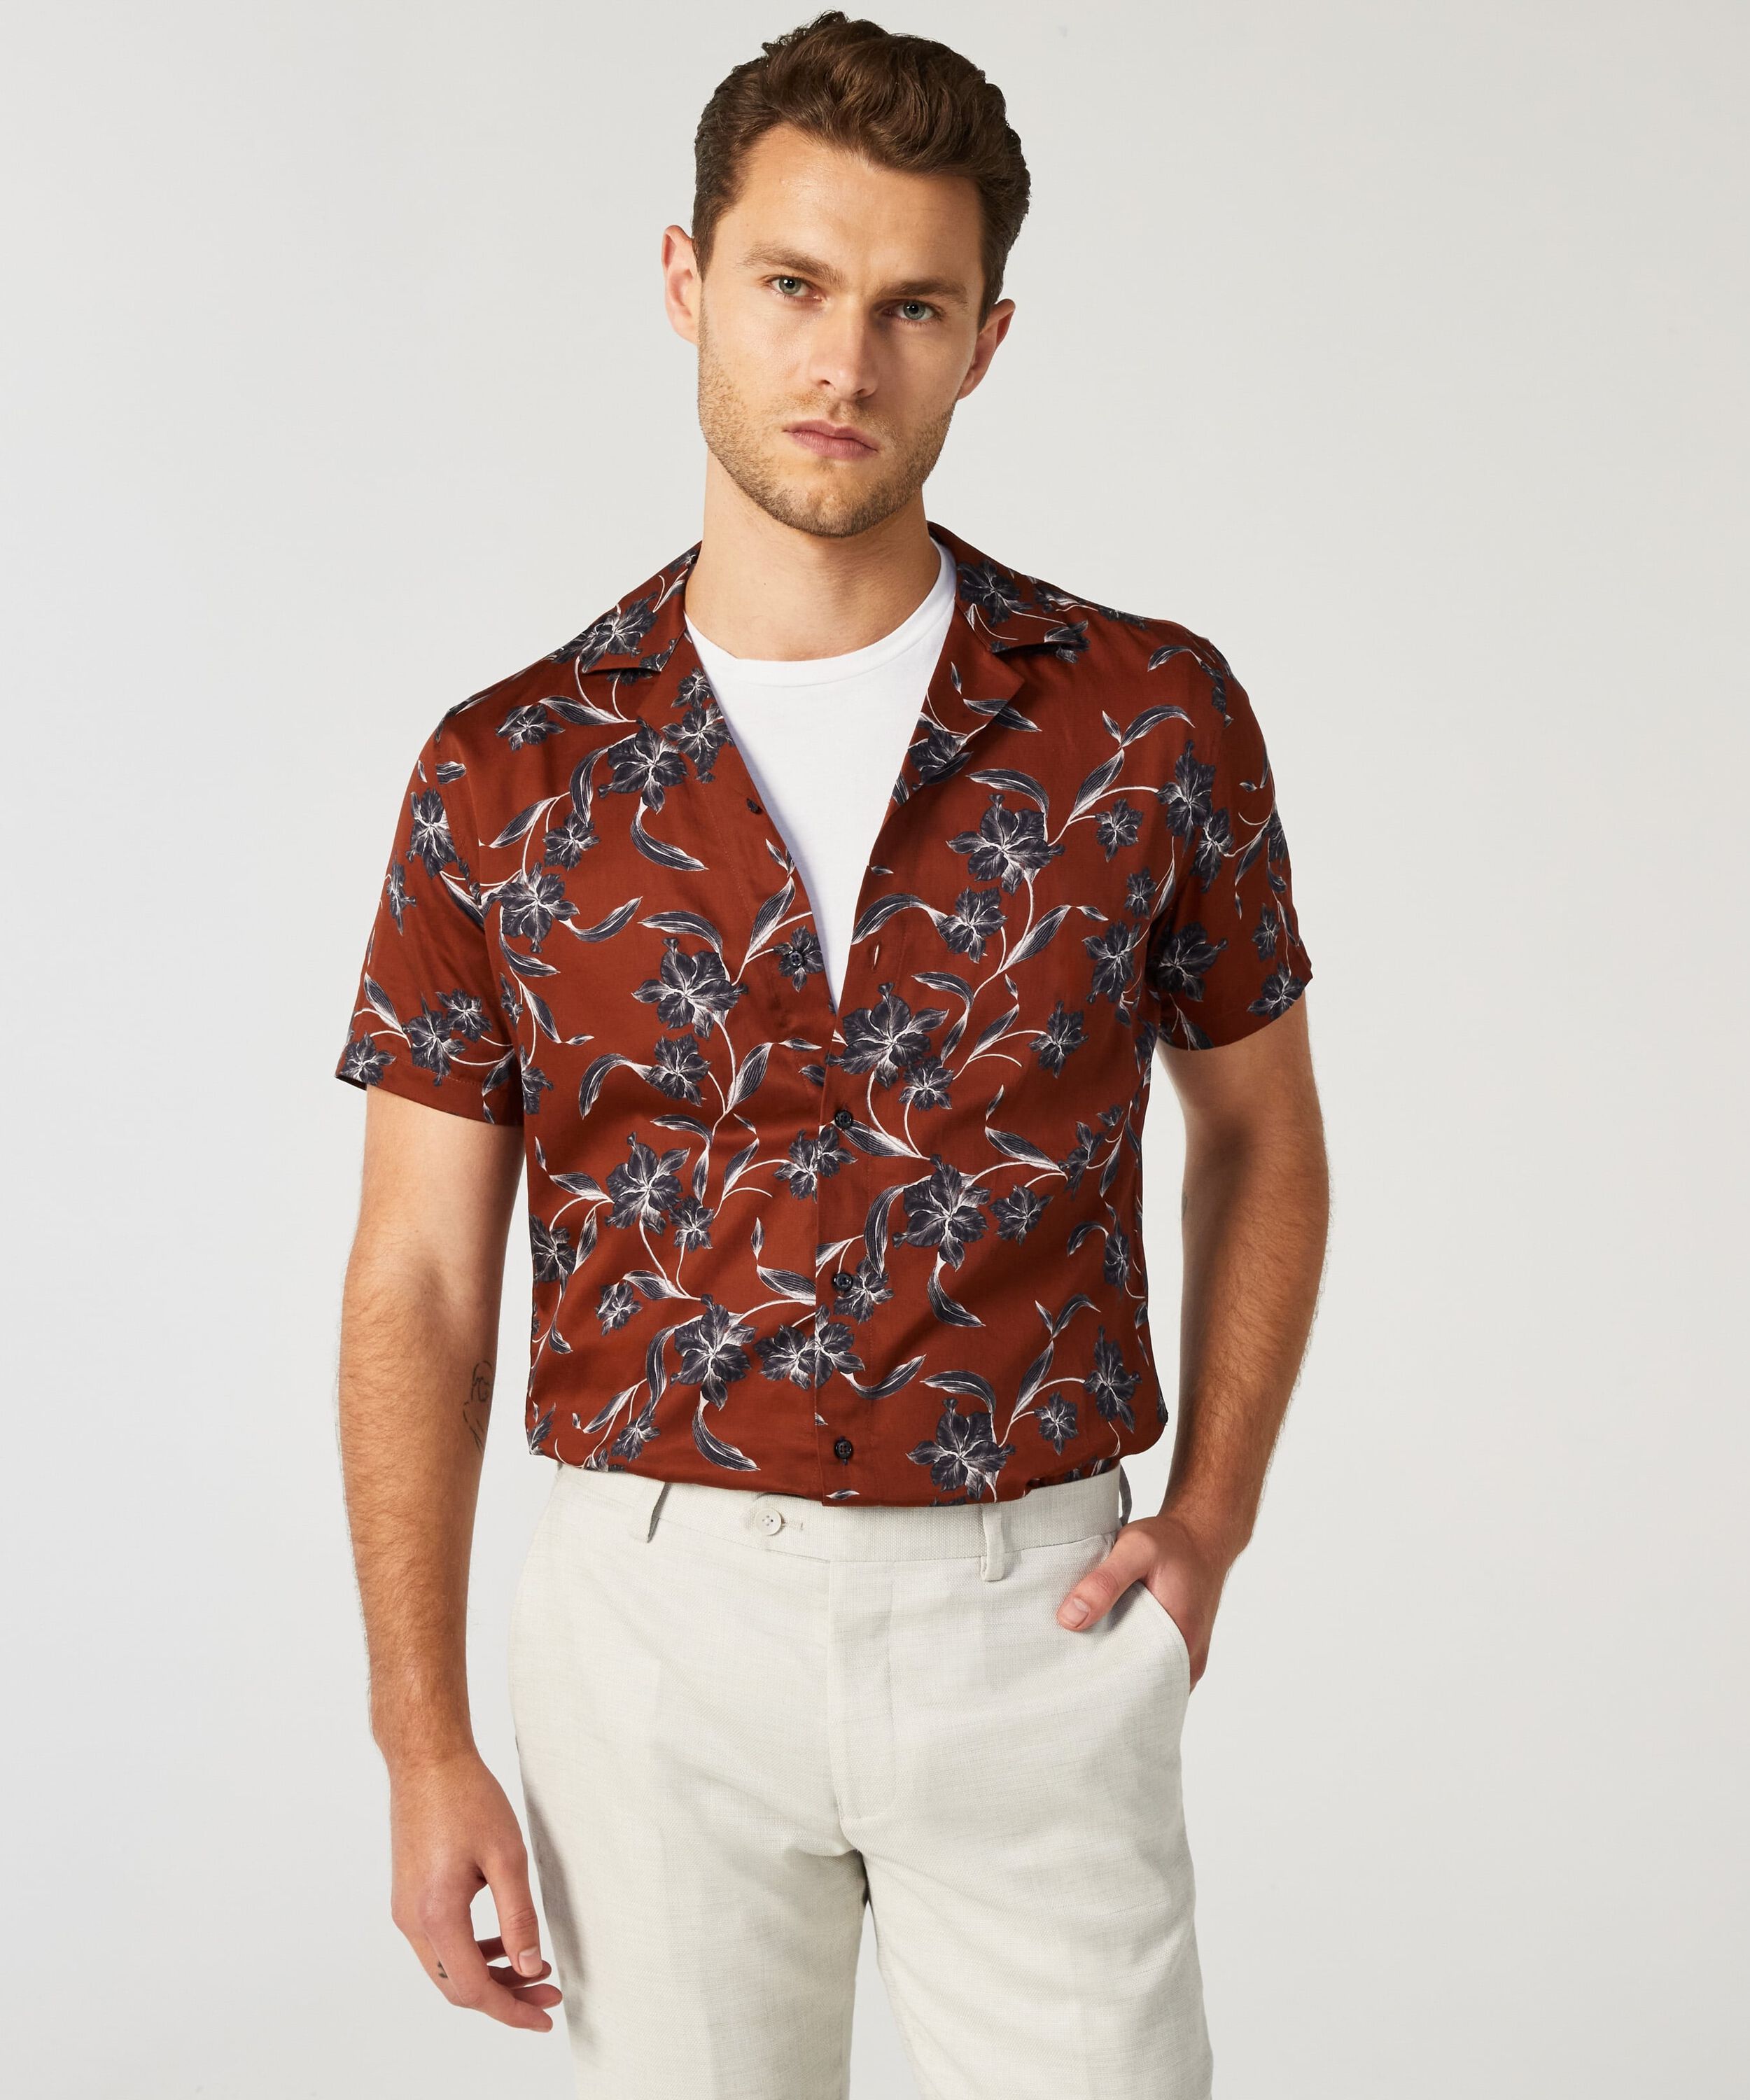 Men's Printed & Pattern Shirts